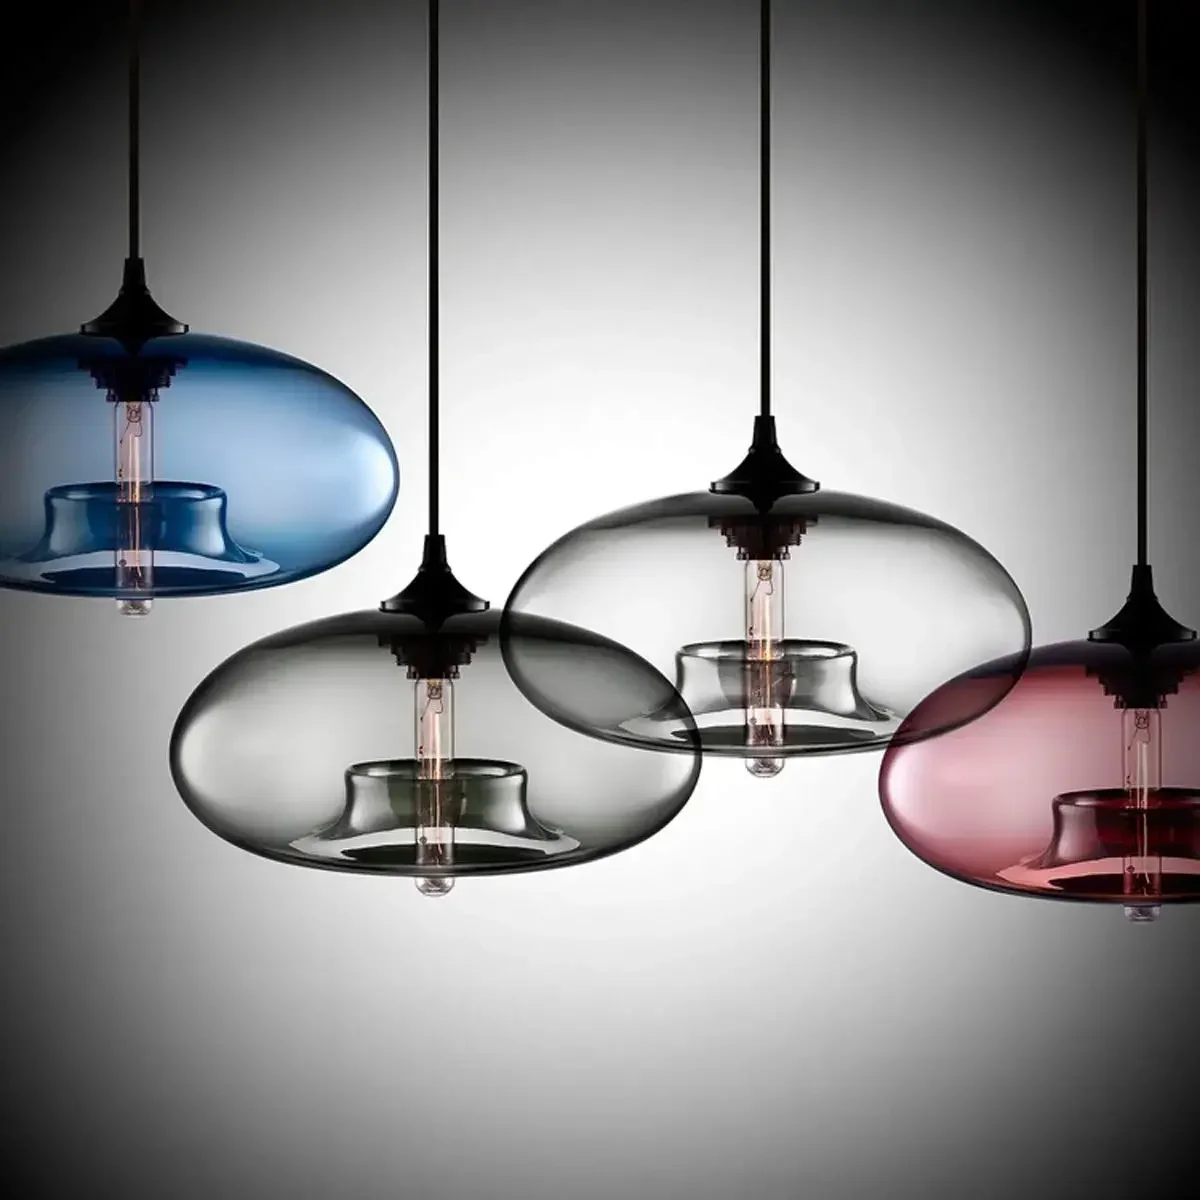 

Nordic Modern Hanging Loft 7 Color Glass Pendant Lamp Decor for Kitchen Restaurant Room Lovely Spherical Light Fixtures